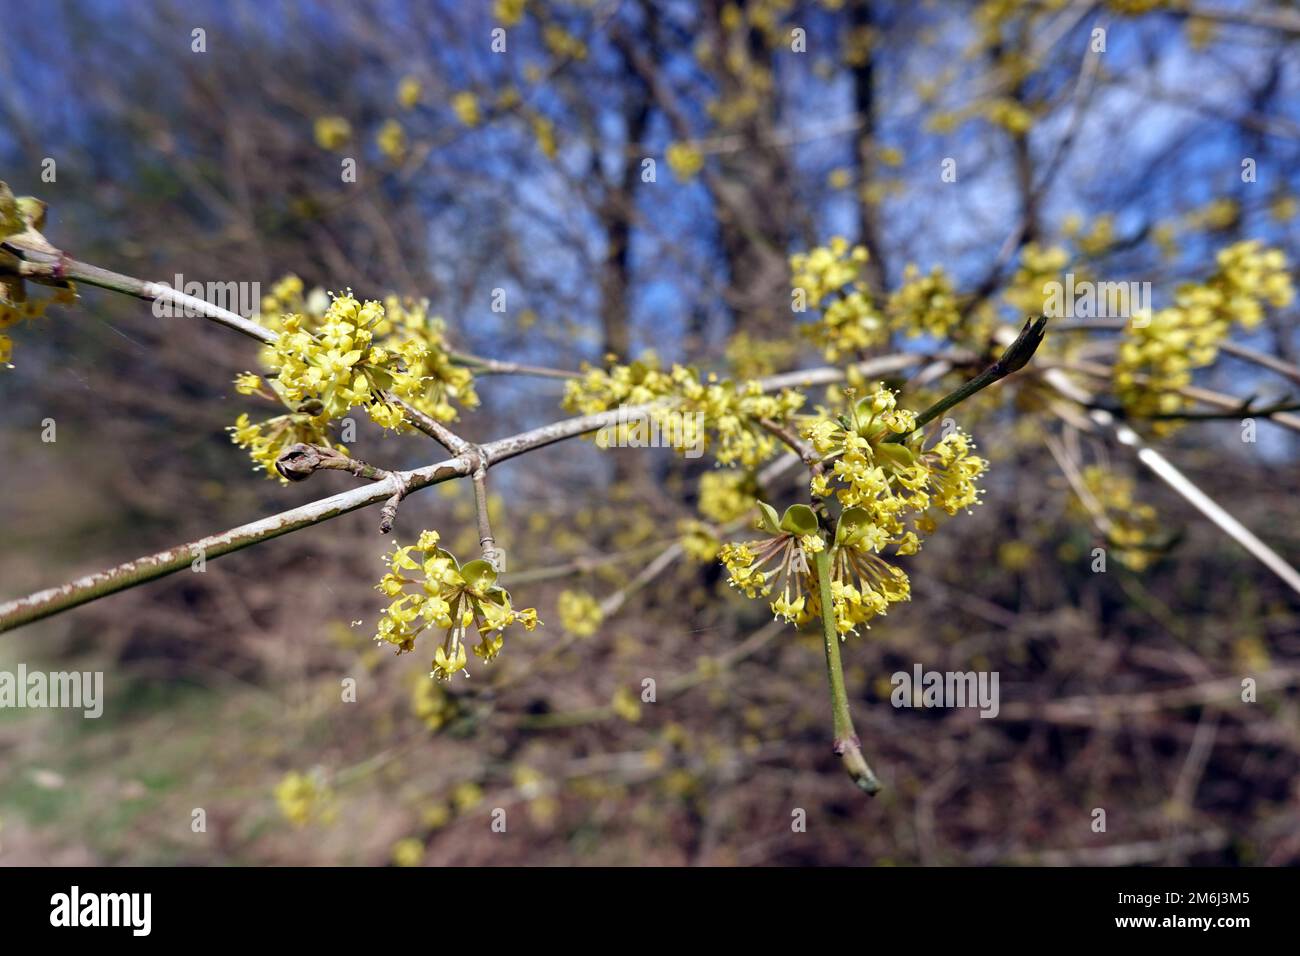 Cerise cornéenne (Cornus mas) - branche avec fleurs Banque D'Images